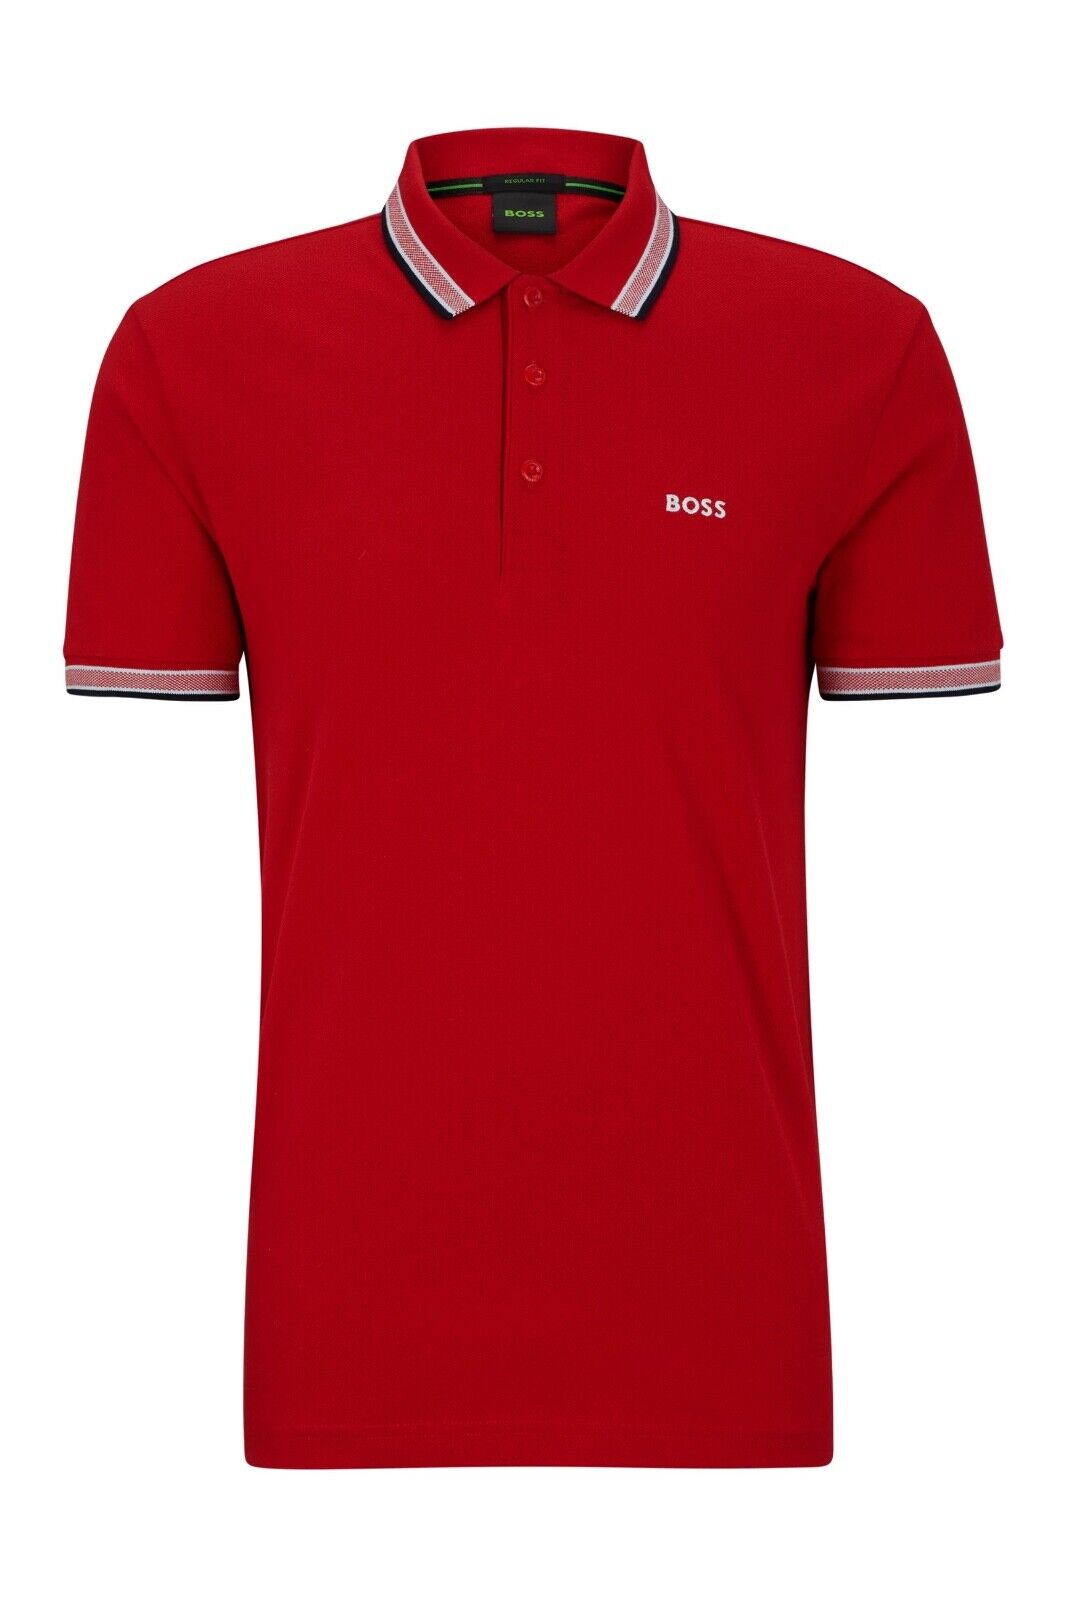 HUGO BOSS Paddy Regular Fit Men’s Polo Shirt in Medium Red 50505600 612